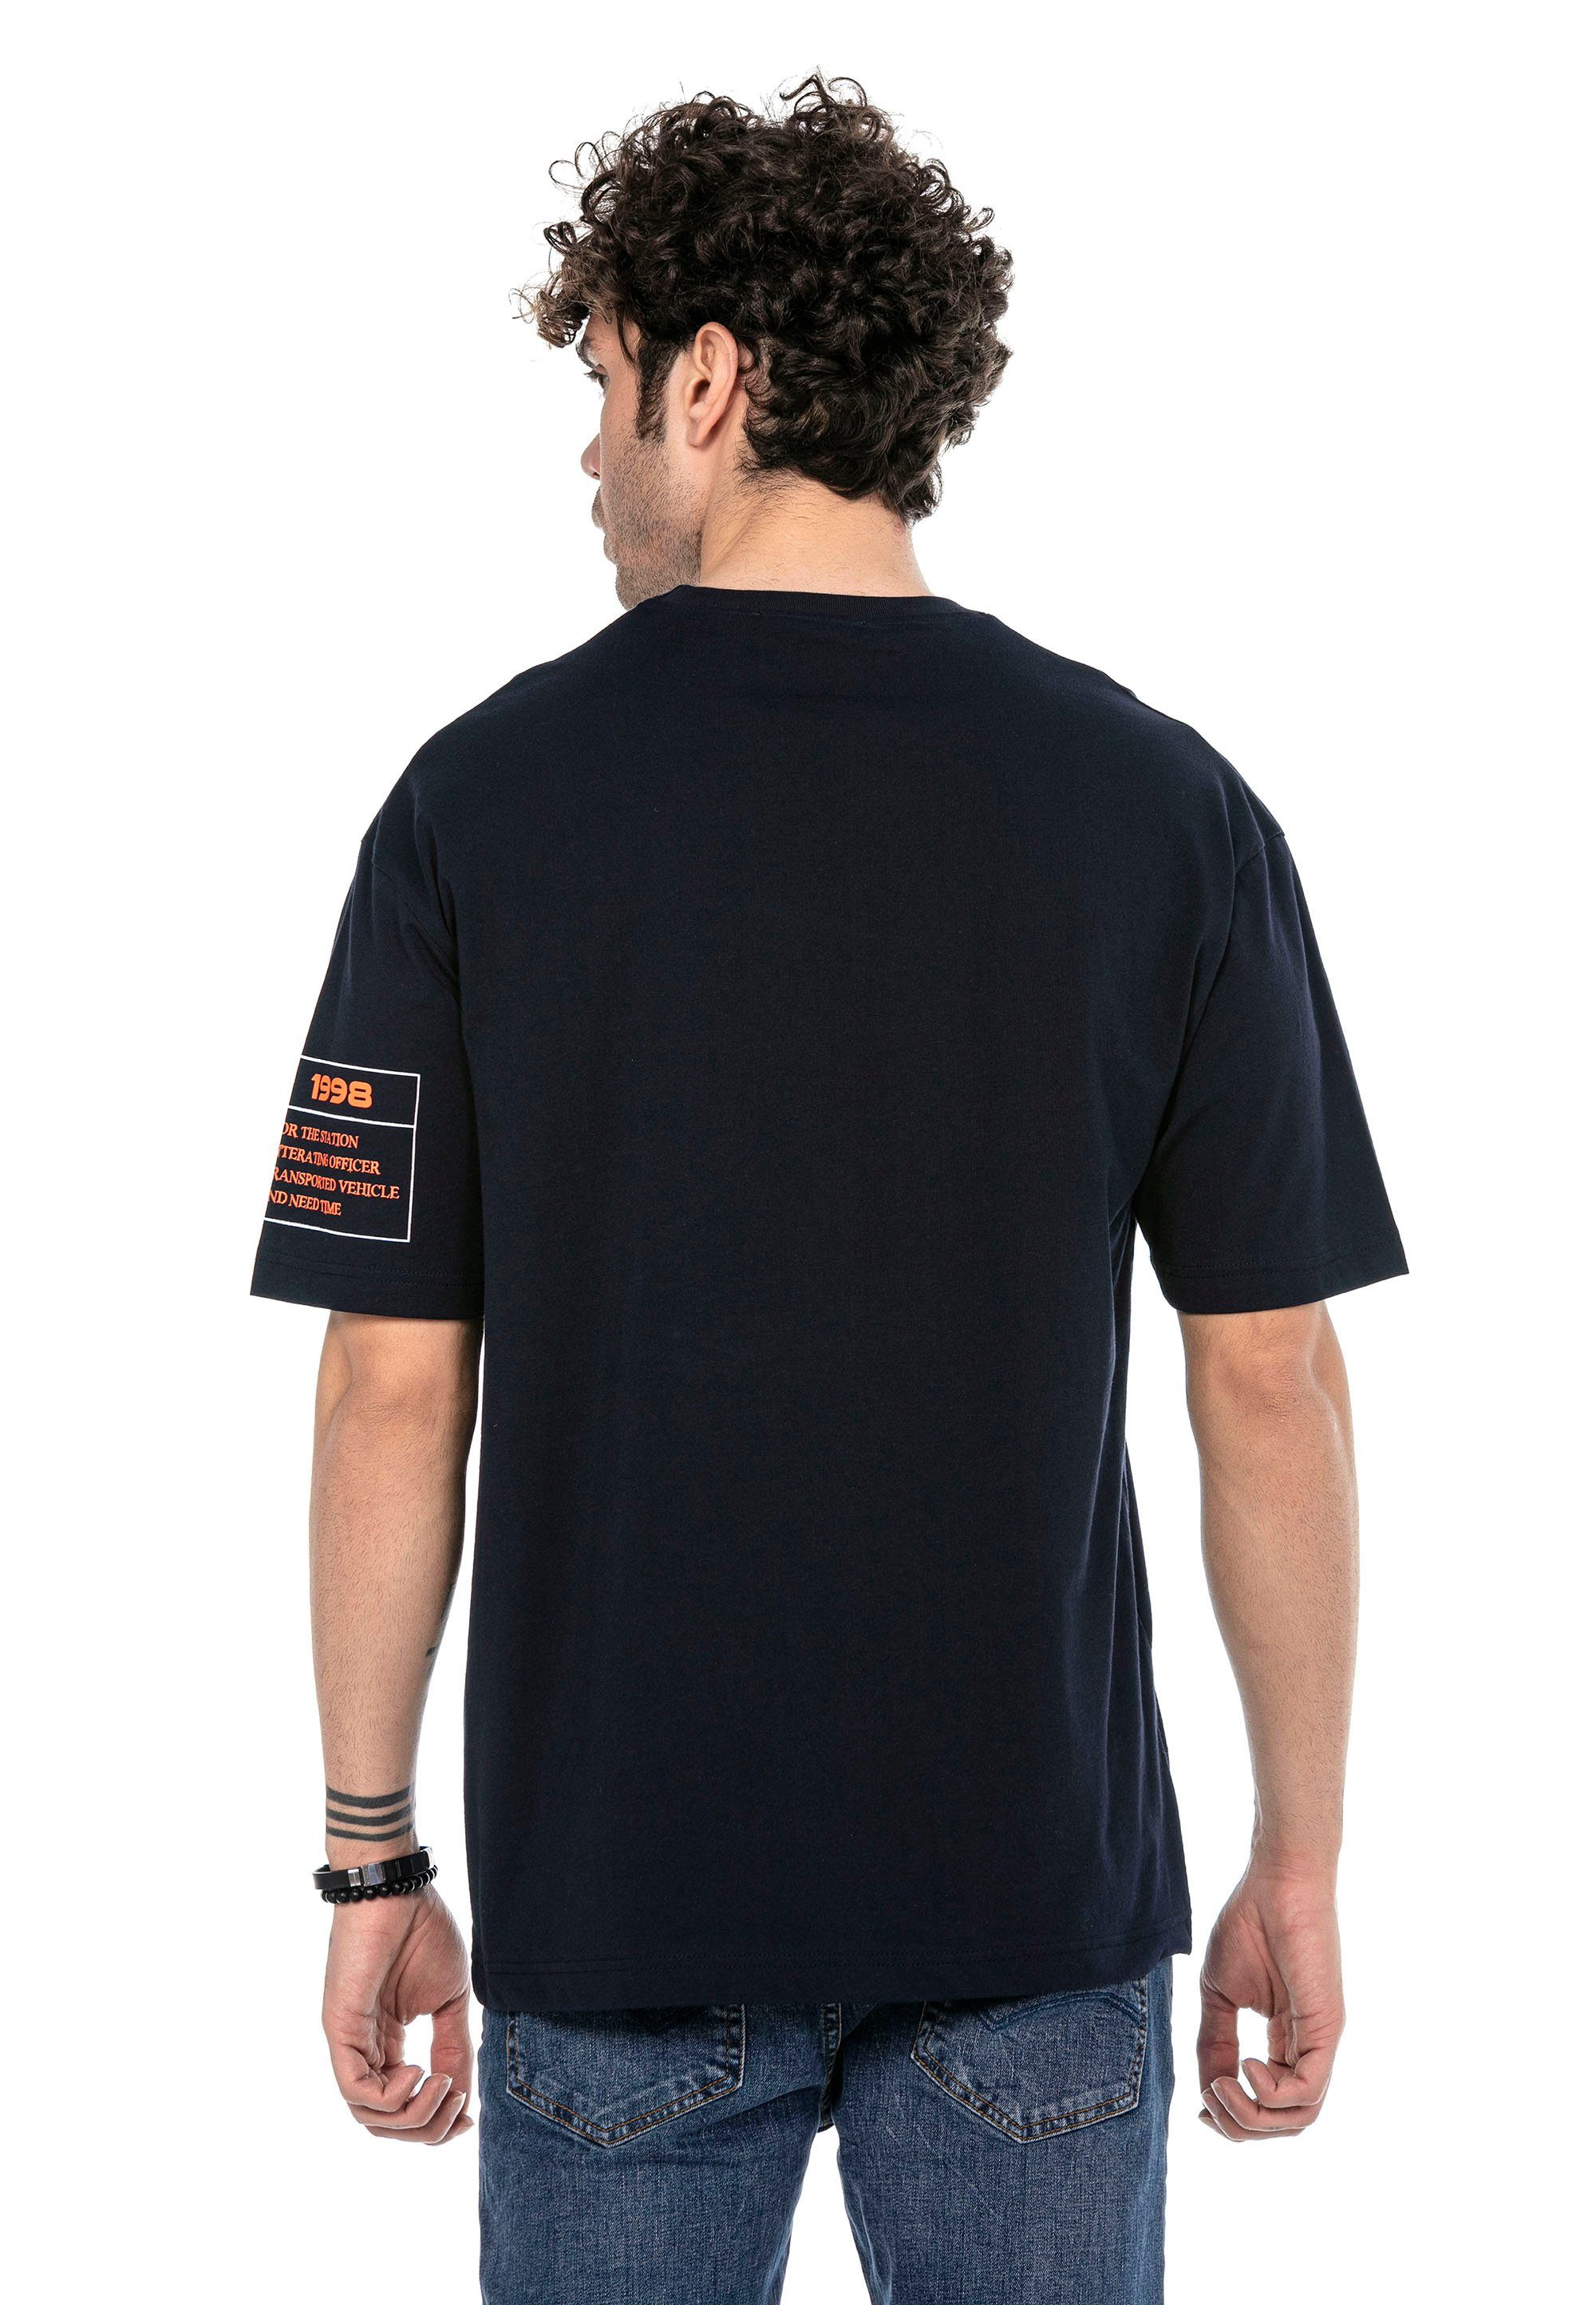 RedBridge T-Shirt McAllen mit dunkelblau Totenkopf-Print stylischem